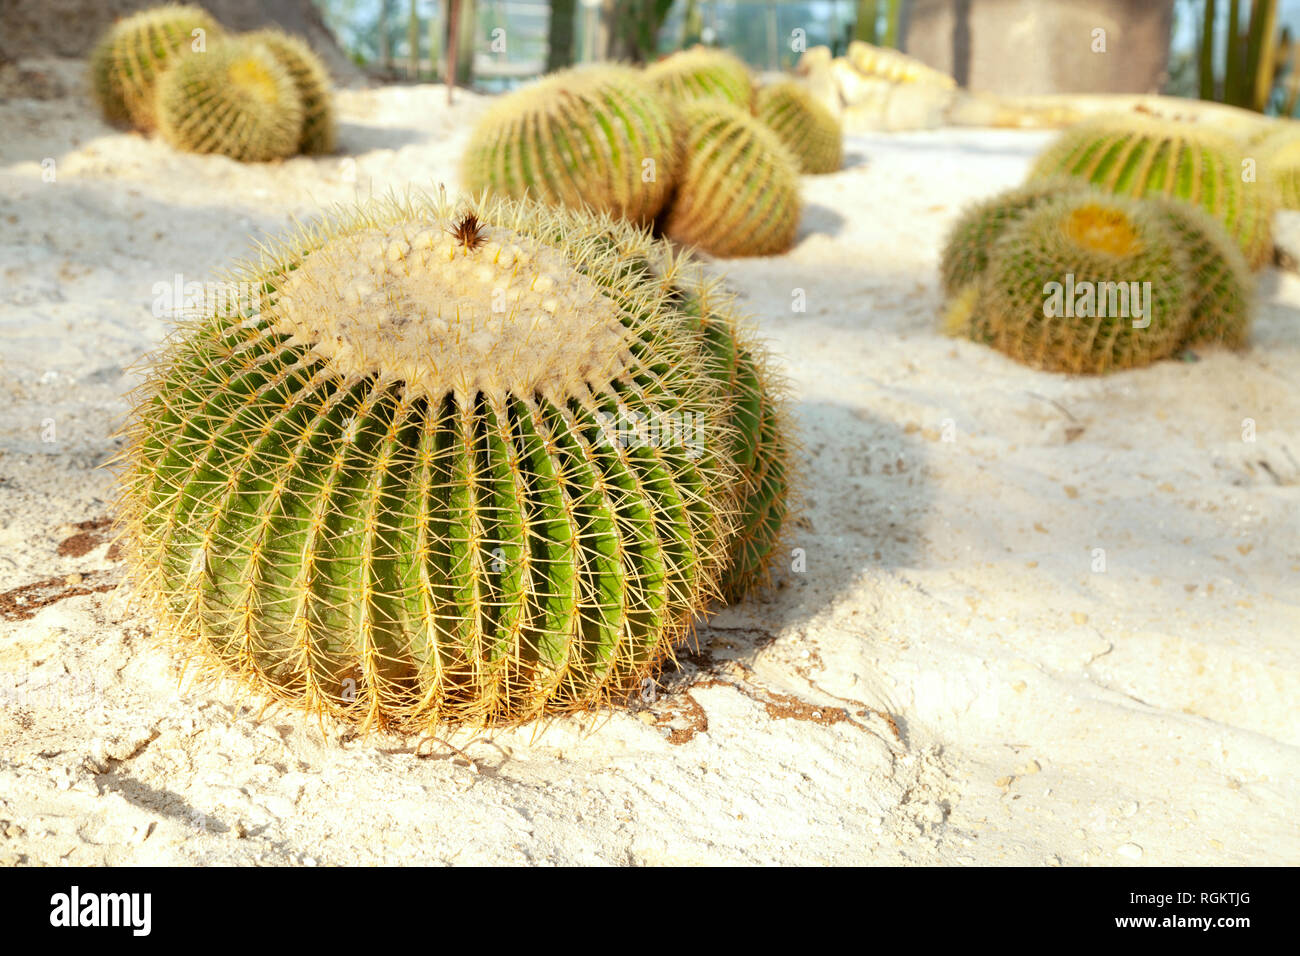 Cactus barril dorado sobre la arena de la tierra en un jardín. Grupo de especies de Echinocactus grusonii plantas redonda Foto de stock